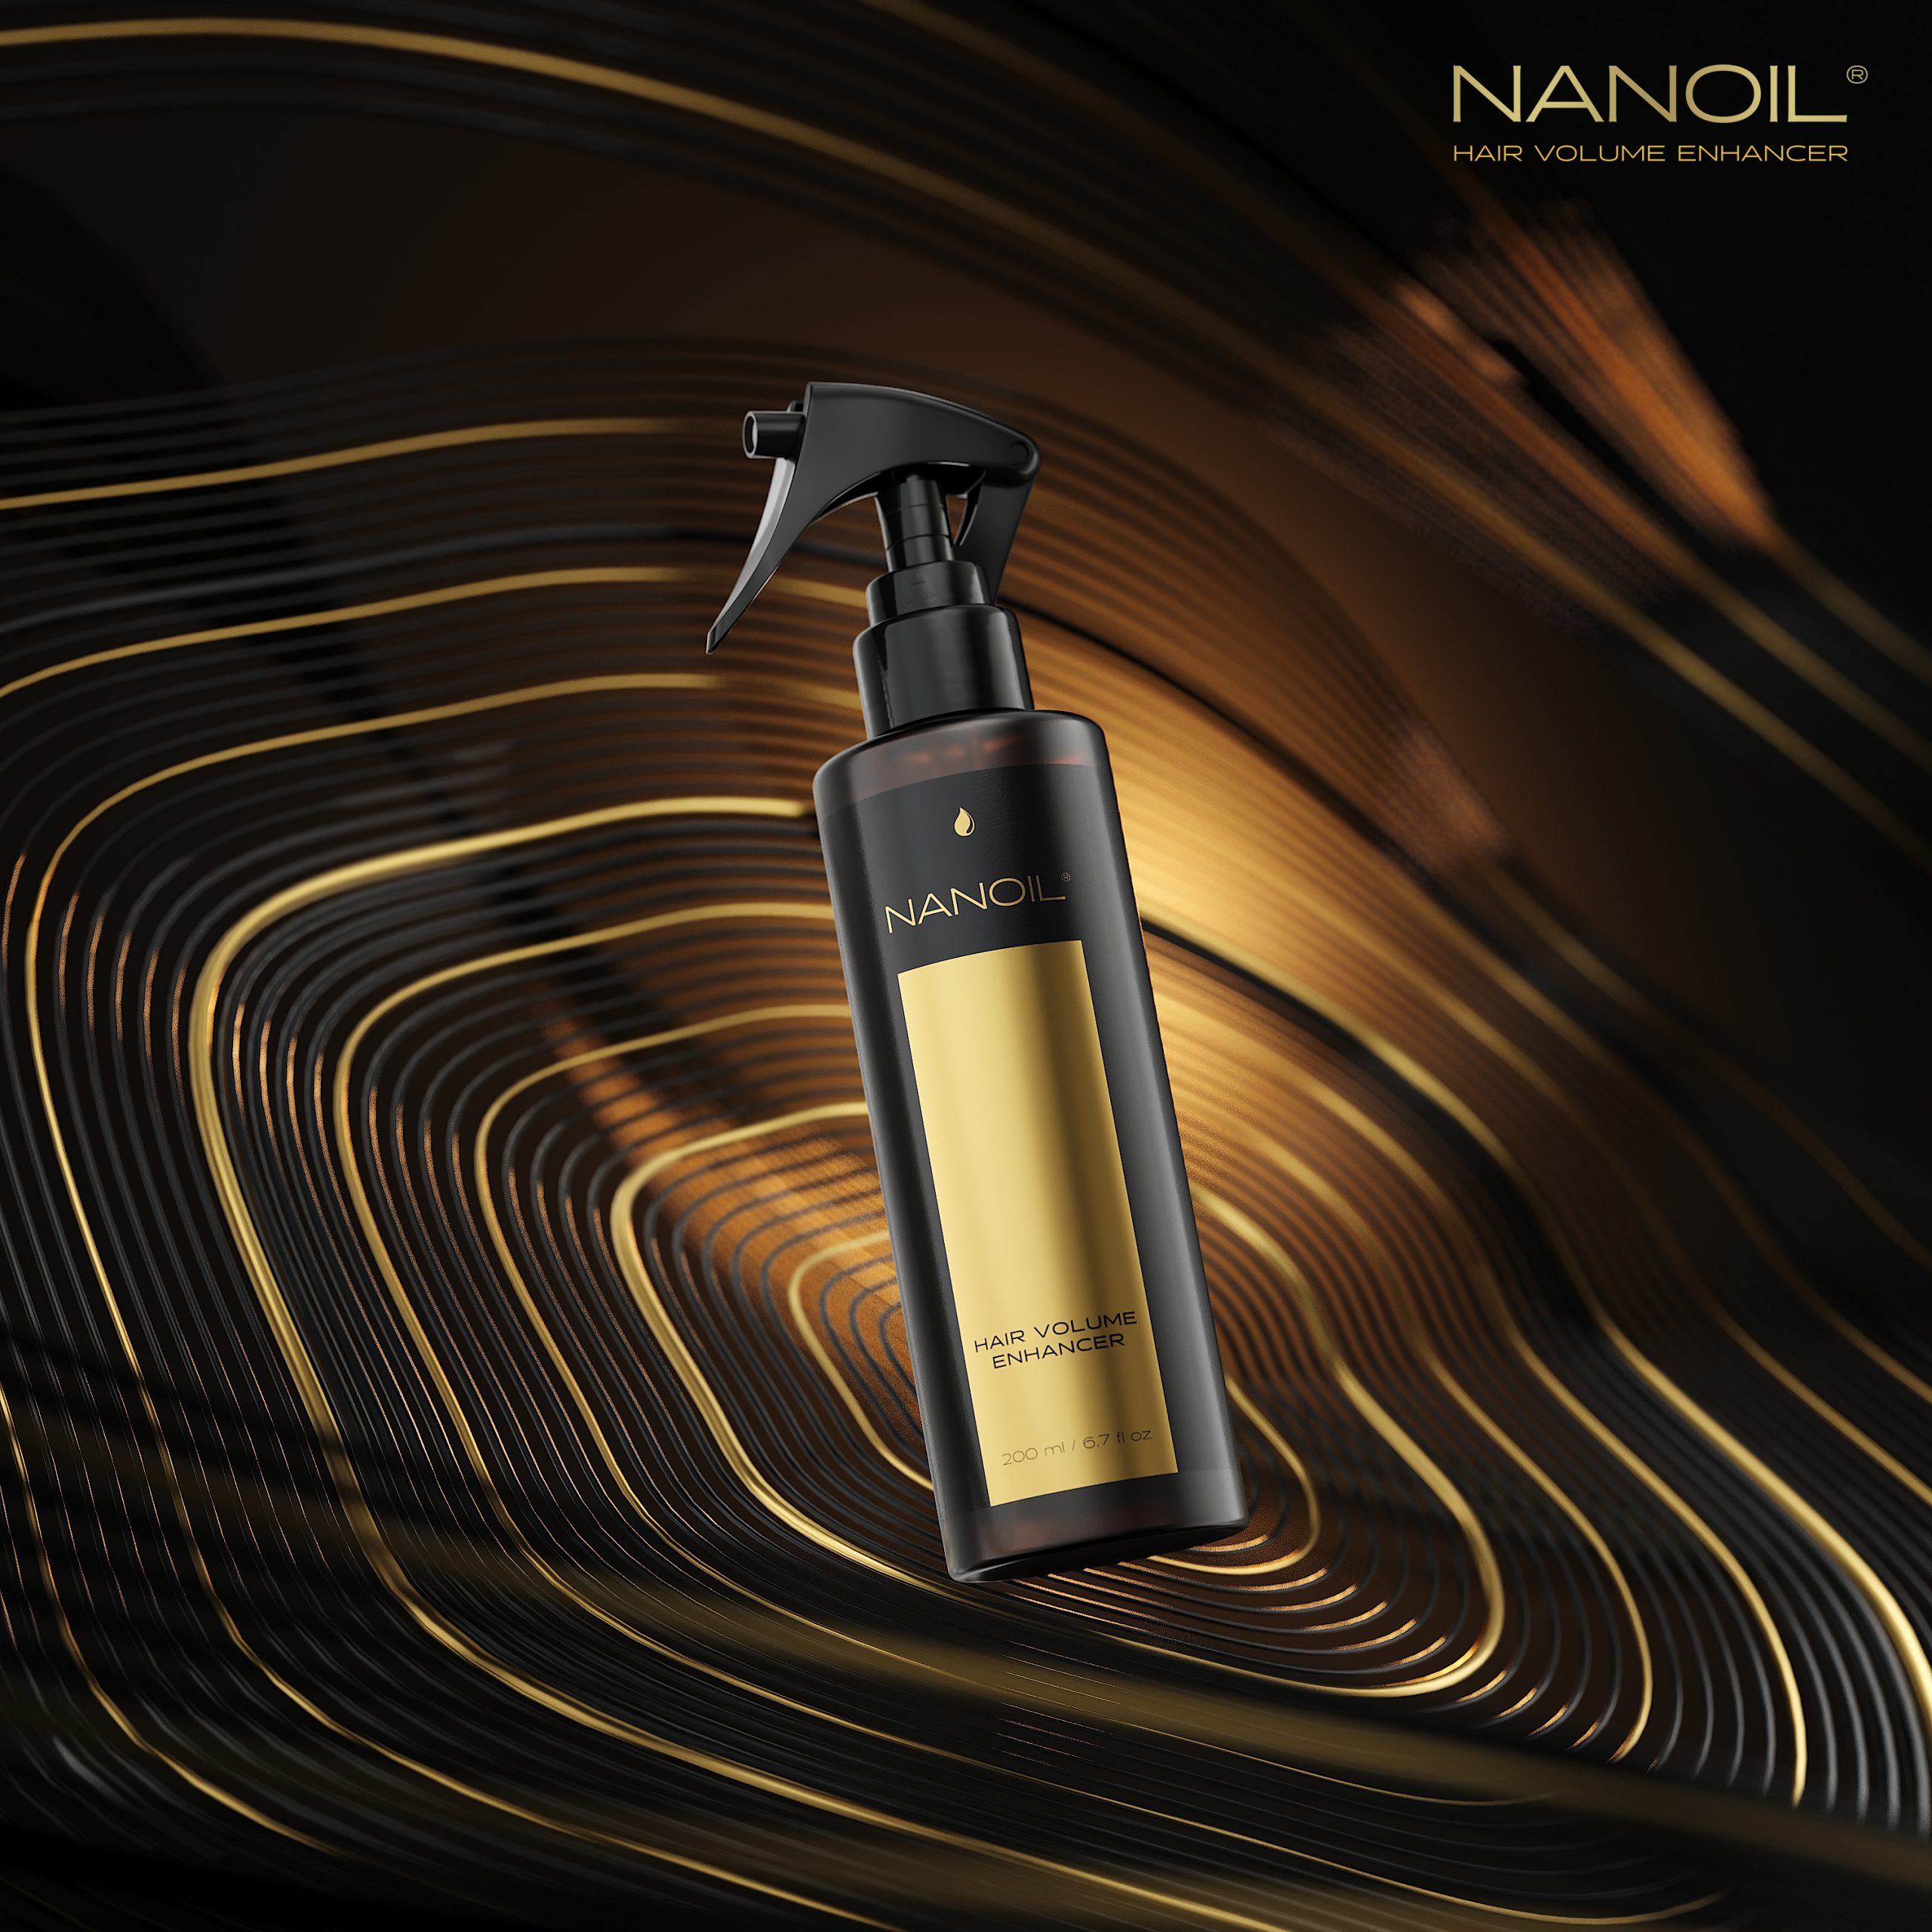 Hair Volume Enhancer Nanoil